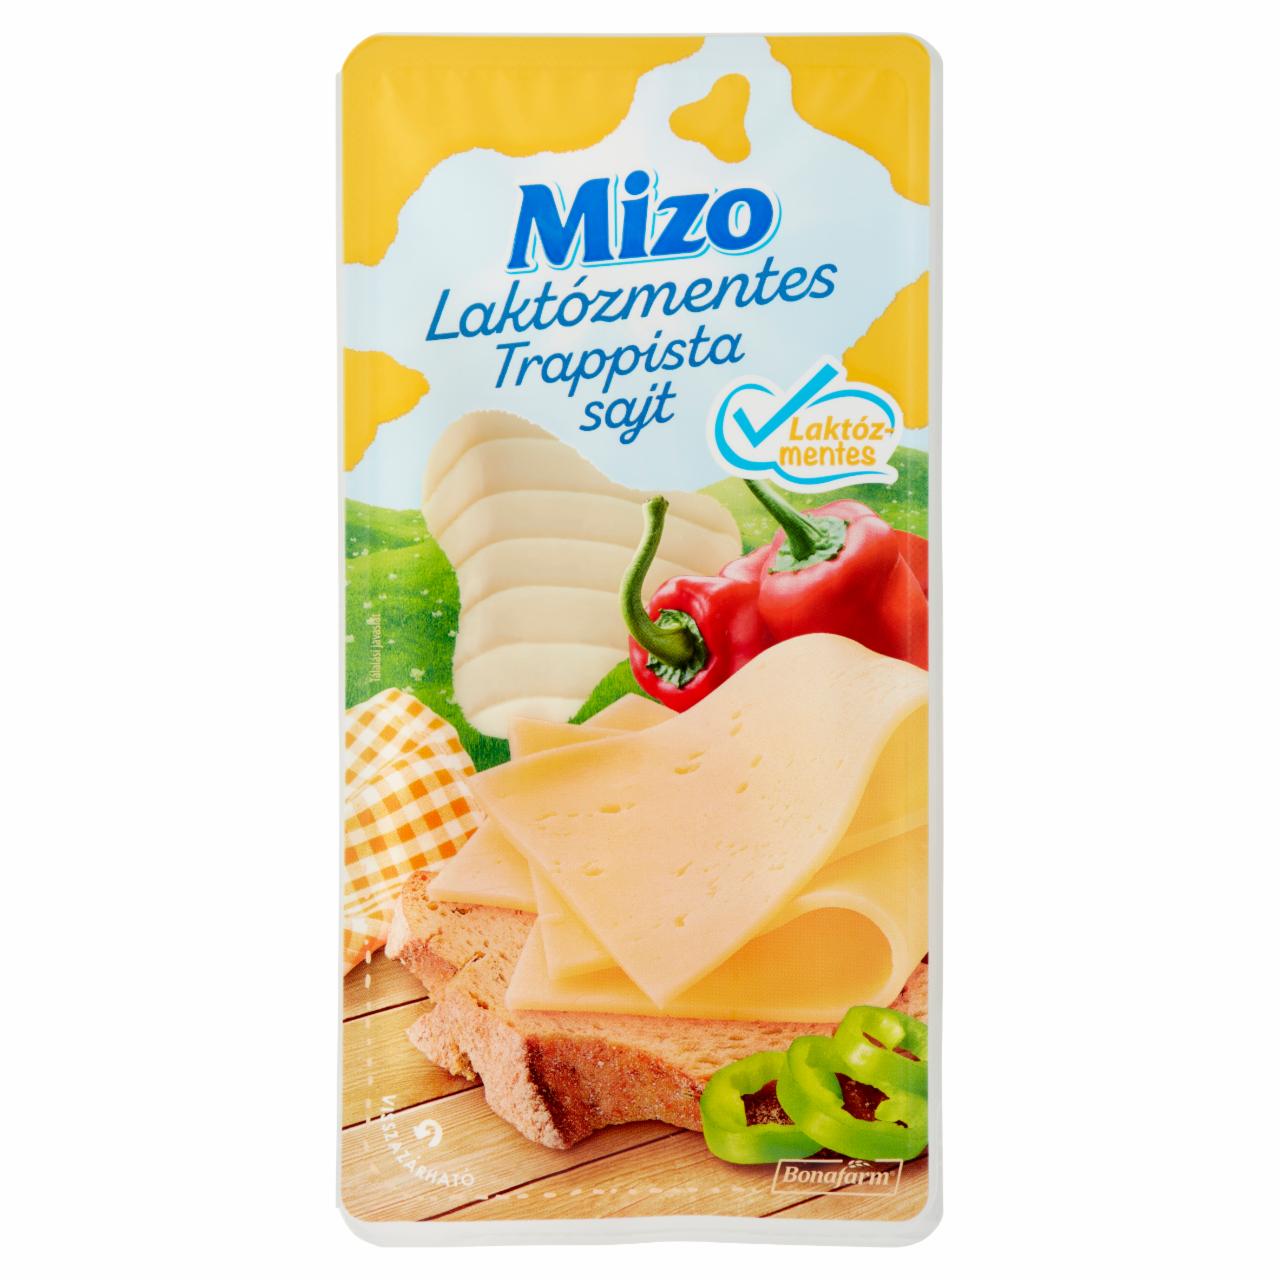 Képek - Mizo szeletelt laktózmentes trappista sajt 125 g